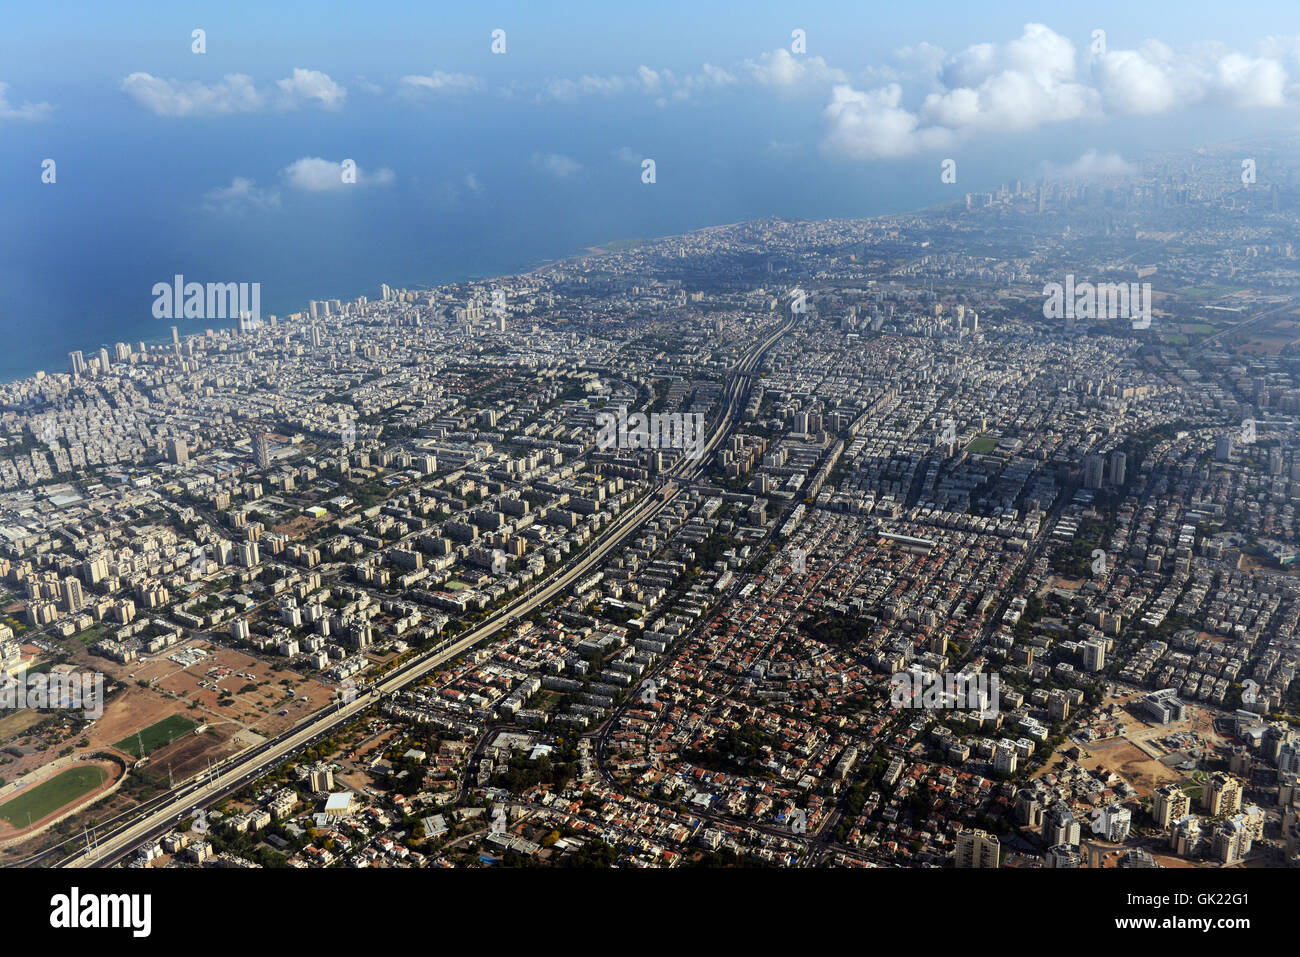 Vista aérea de la zona metropolitana de Tel Aviv, al sur de Tel-Aviv. Foto de stock